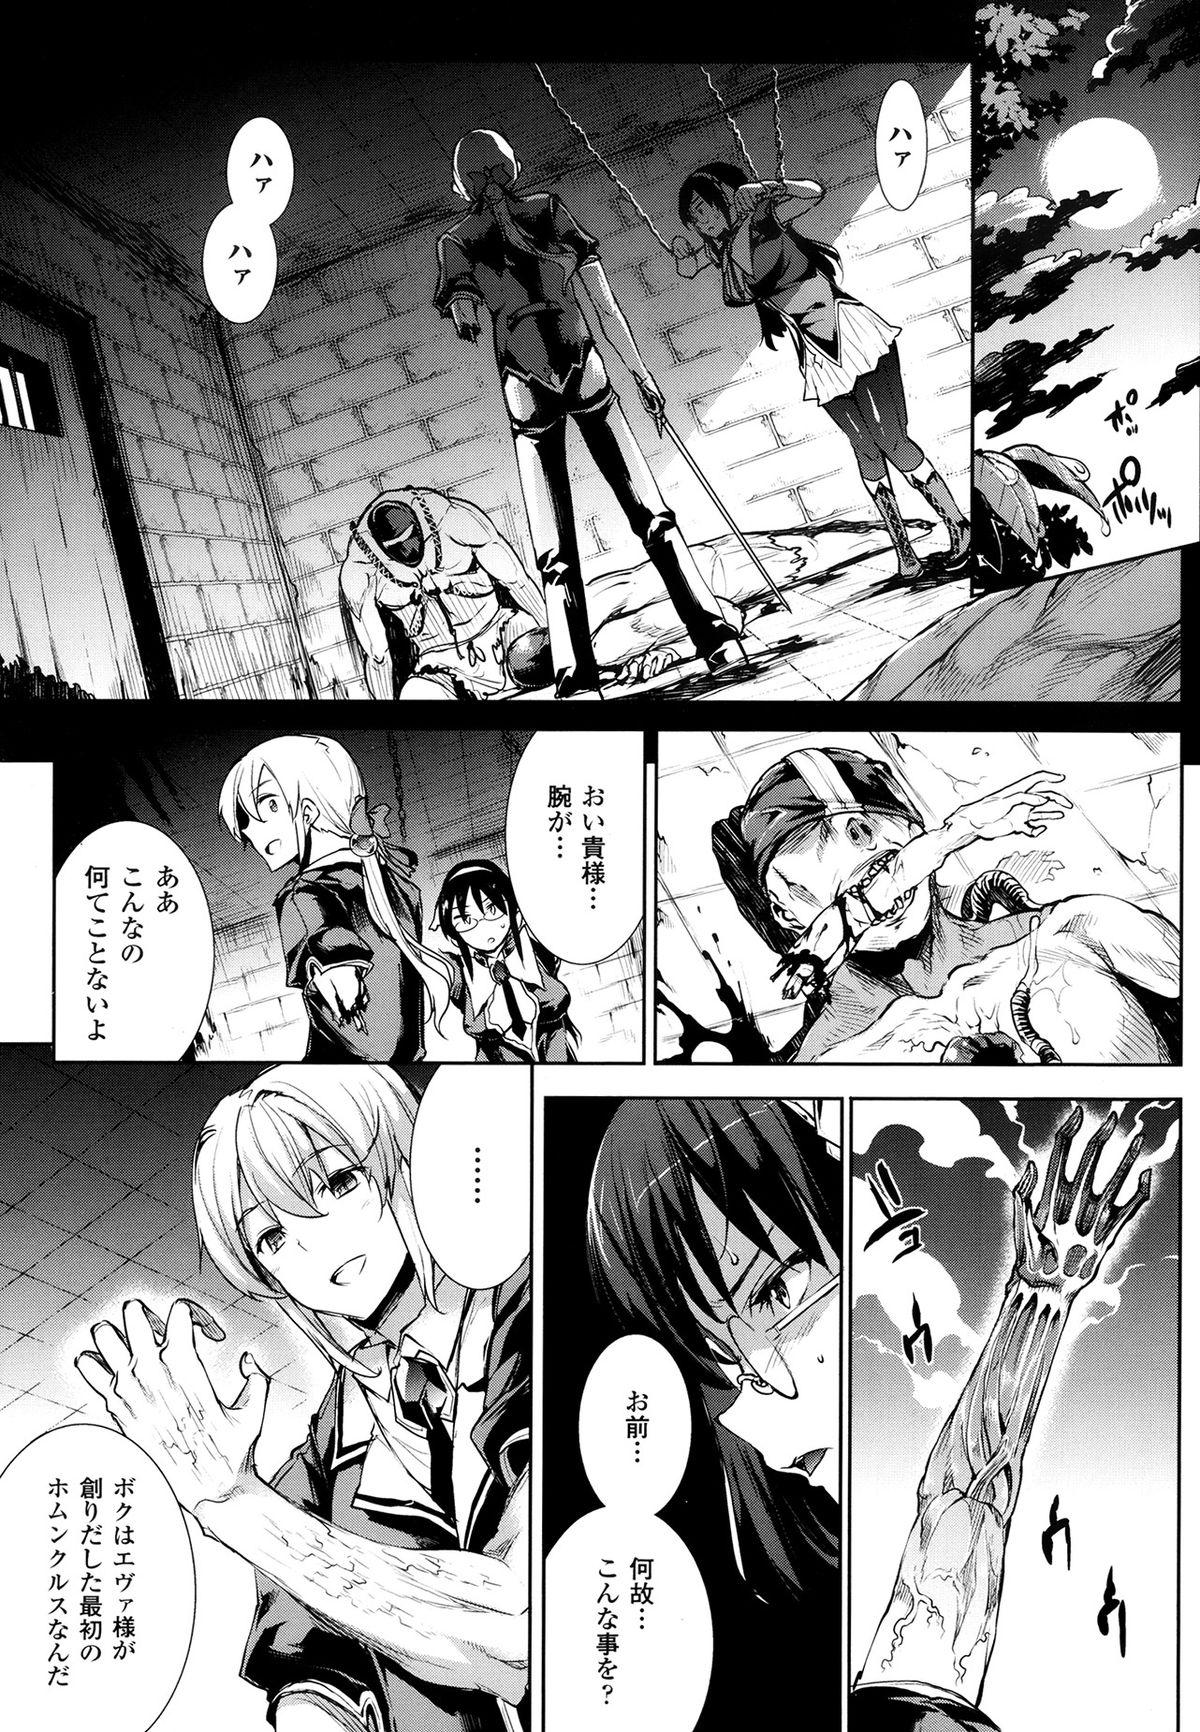 [Erect Sawaru] Shinkyoku no Grimoire -PANDRA saga 2nd story- Ch 07-9.5 31